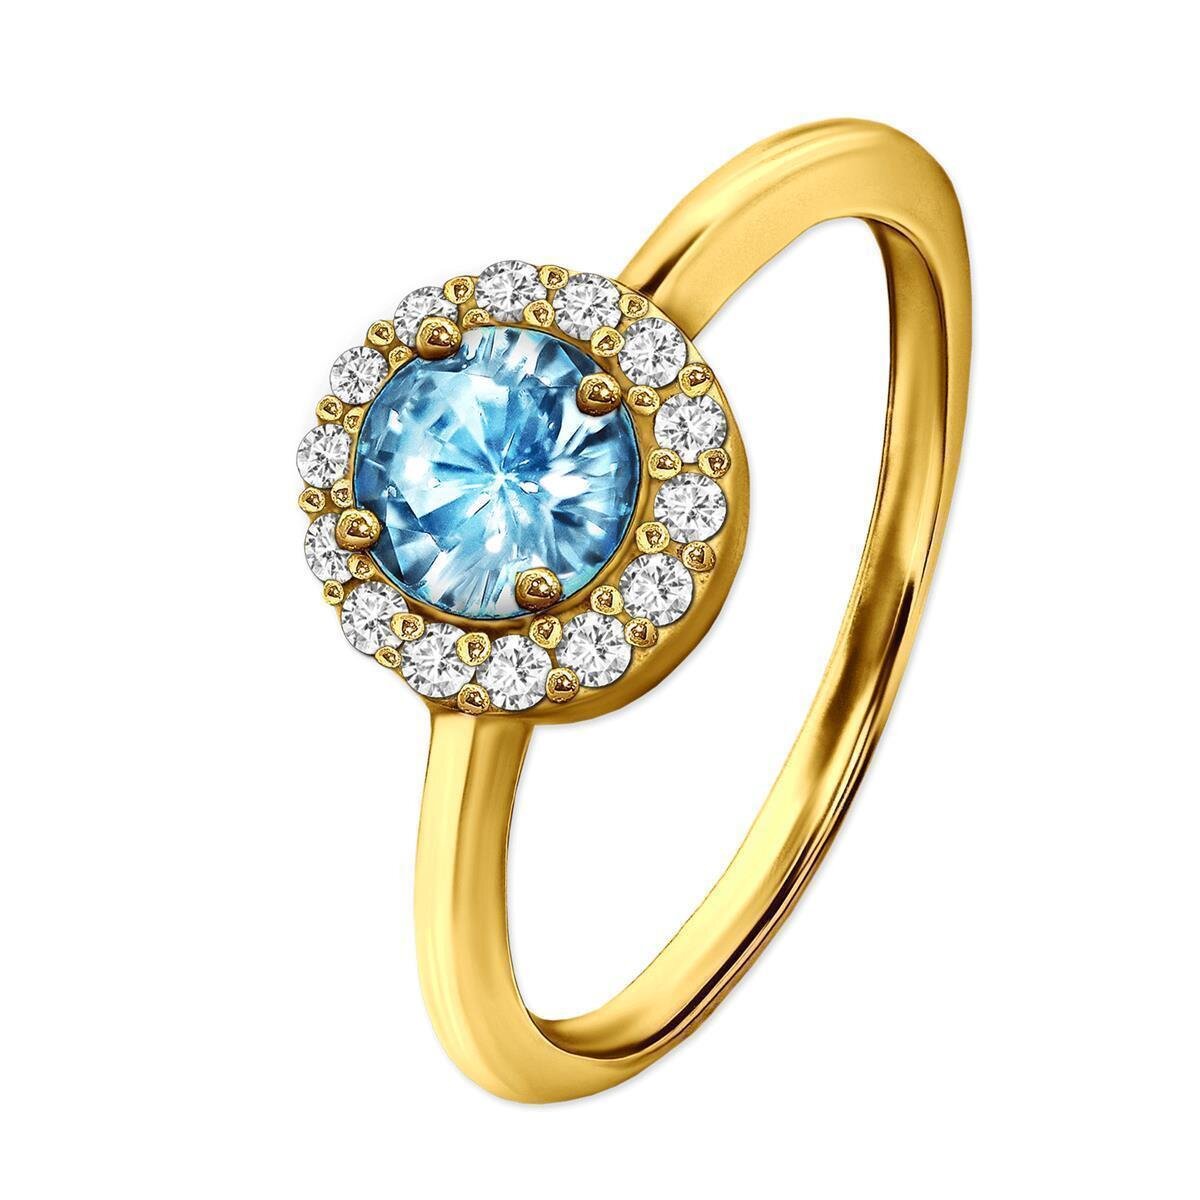 Goldner Ring großer Hellblauer Stein viele Zirkonia ringsrum Echt Silber 925 wählbare Größe